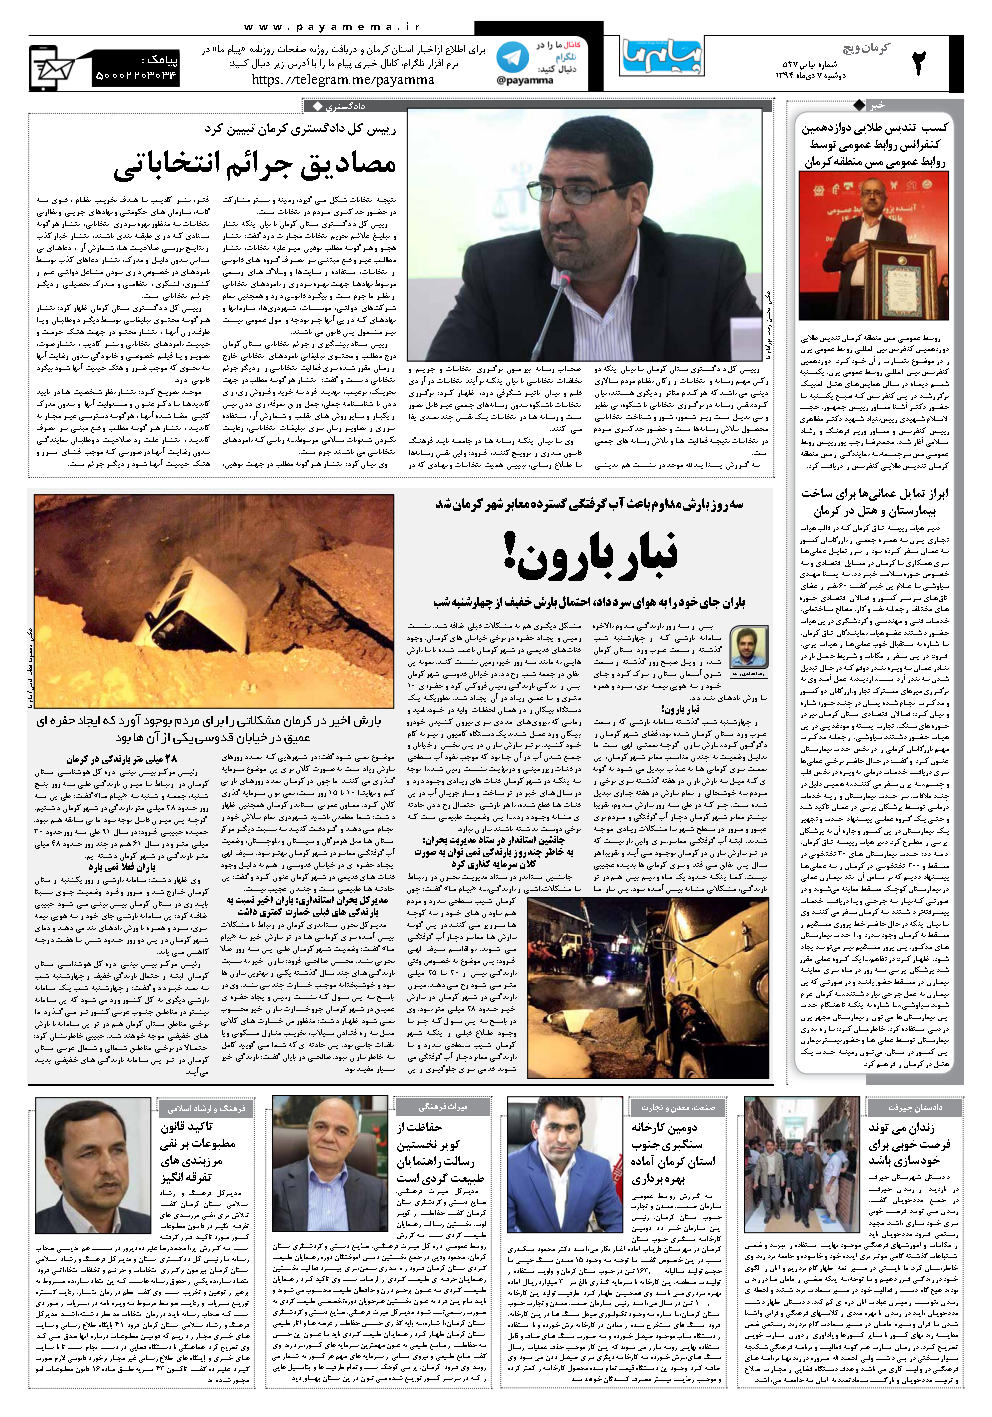 رییس کل دادگستری کرمان تبیین کرد مصادیق جرائم انتخاباتی